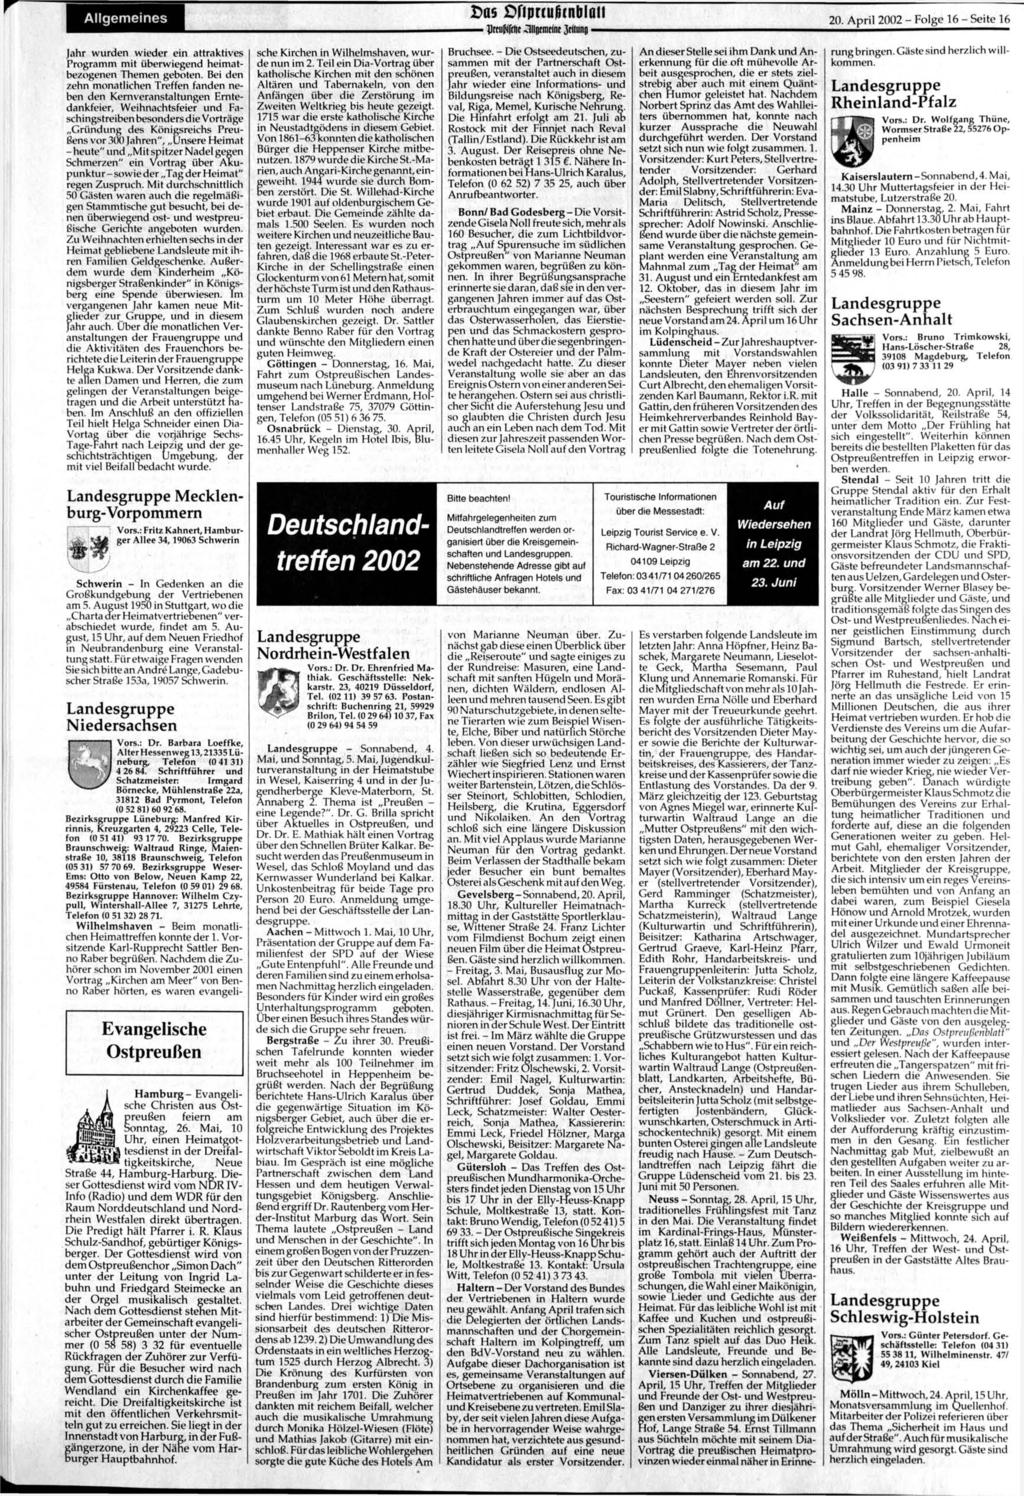 Allgemeines Das ftprcußfnblaii IJmiMrlir -Hlltifmnnr }tmint) 20. April 2002 - Folge 16 - Seite 16 Jahr wurden wieder ein attraktives Programm mit überwiegend heimatbezogenen Themen geboten.